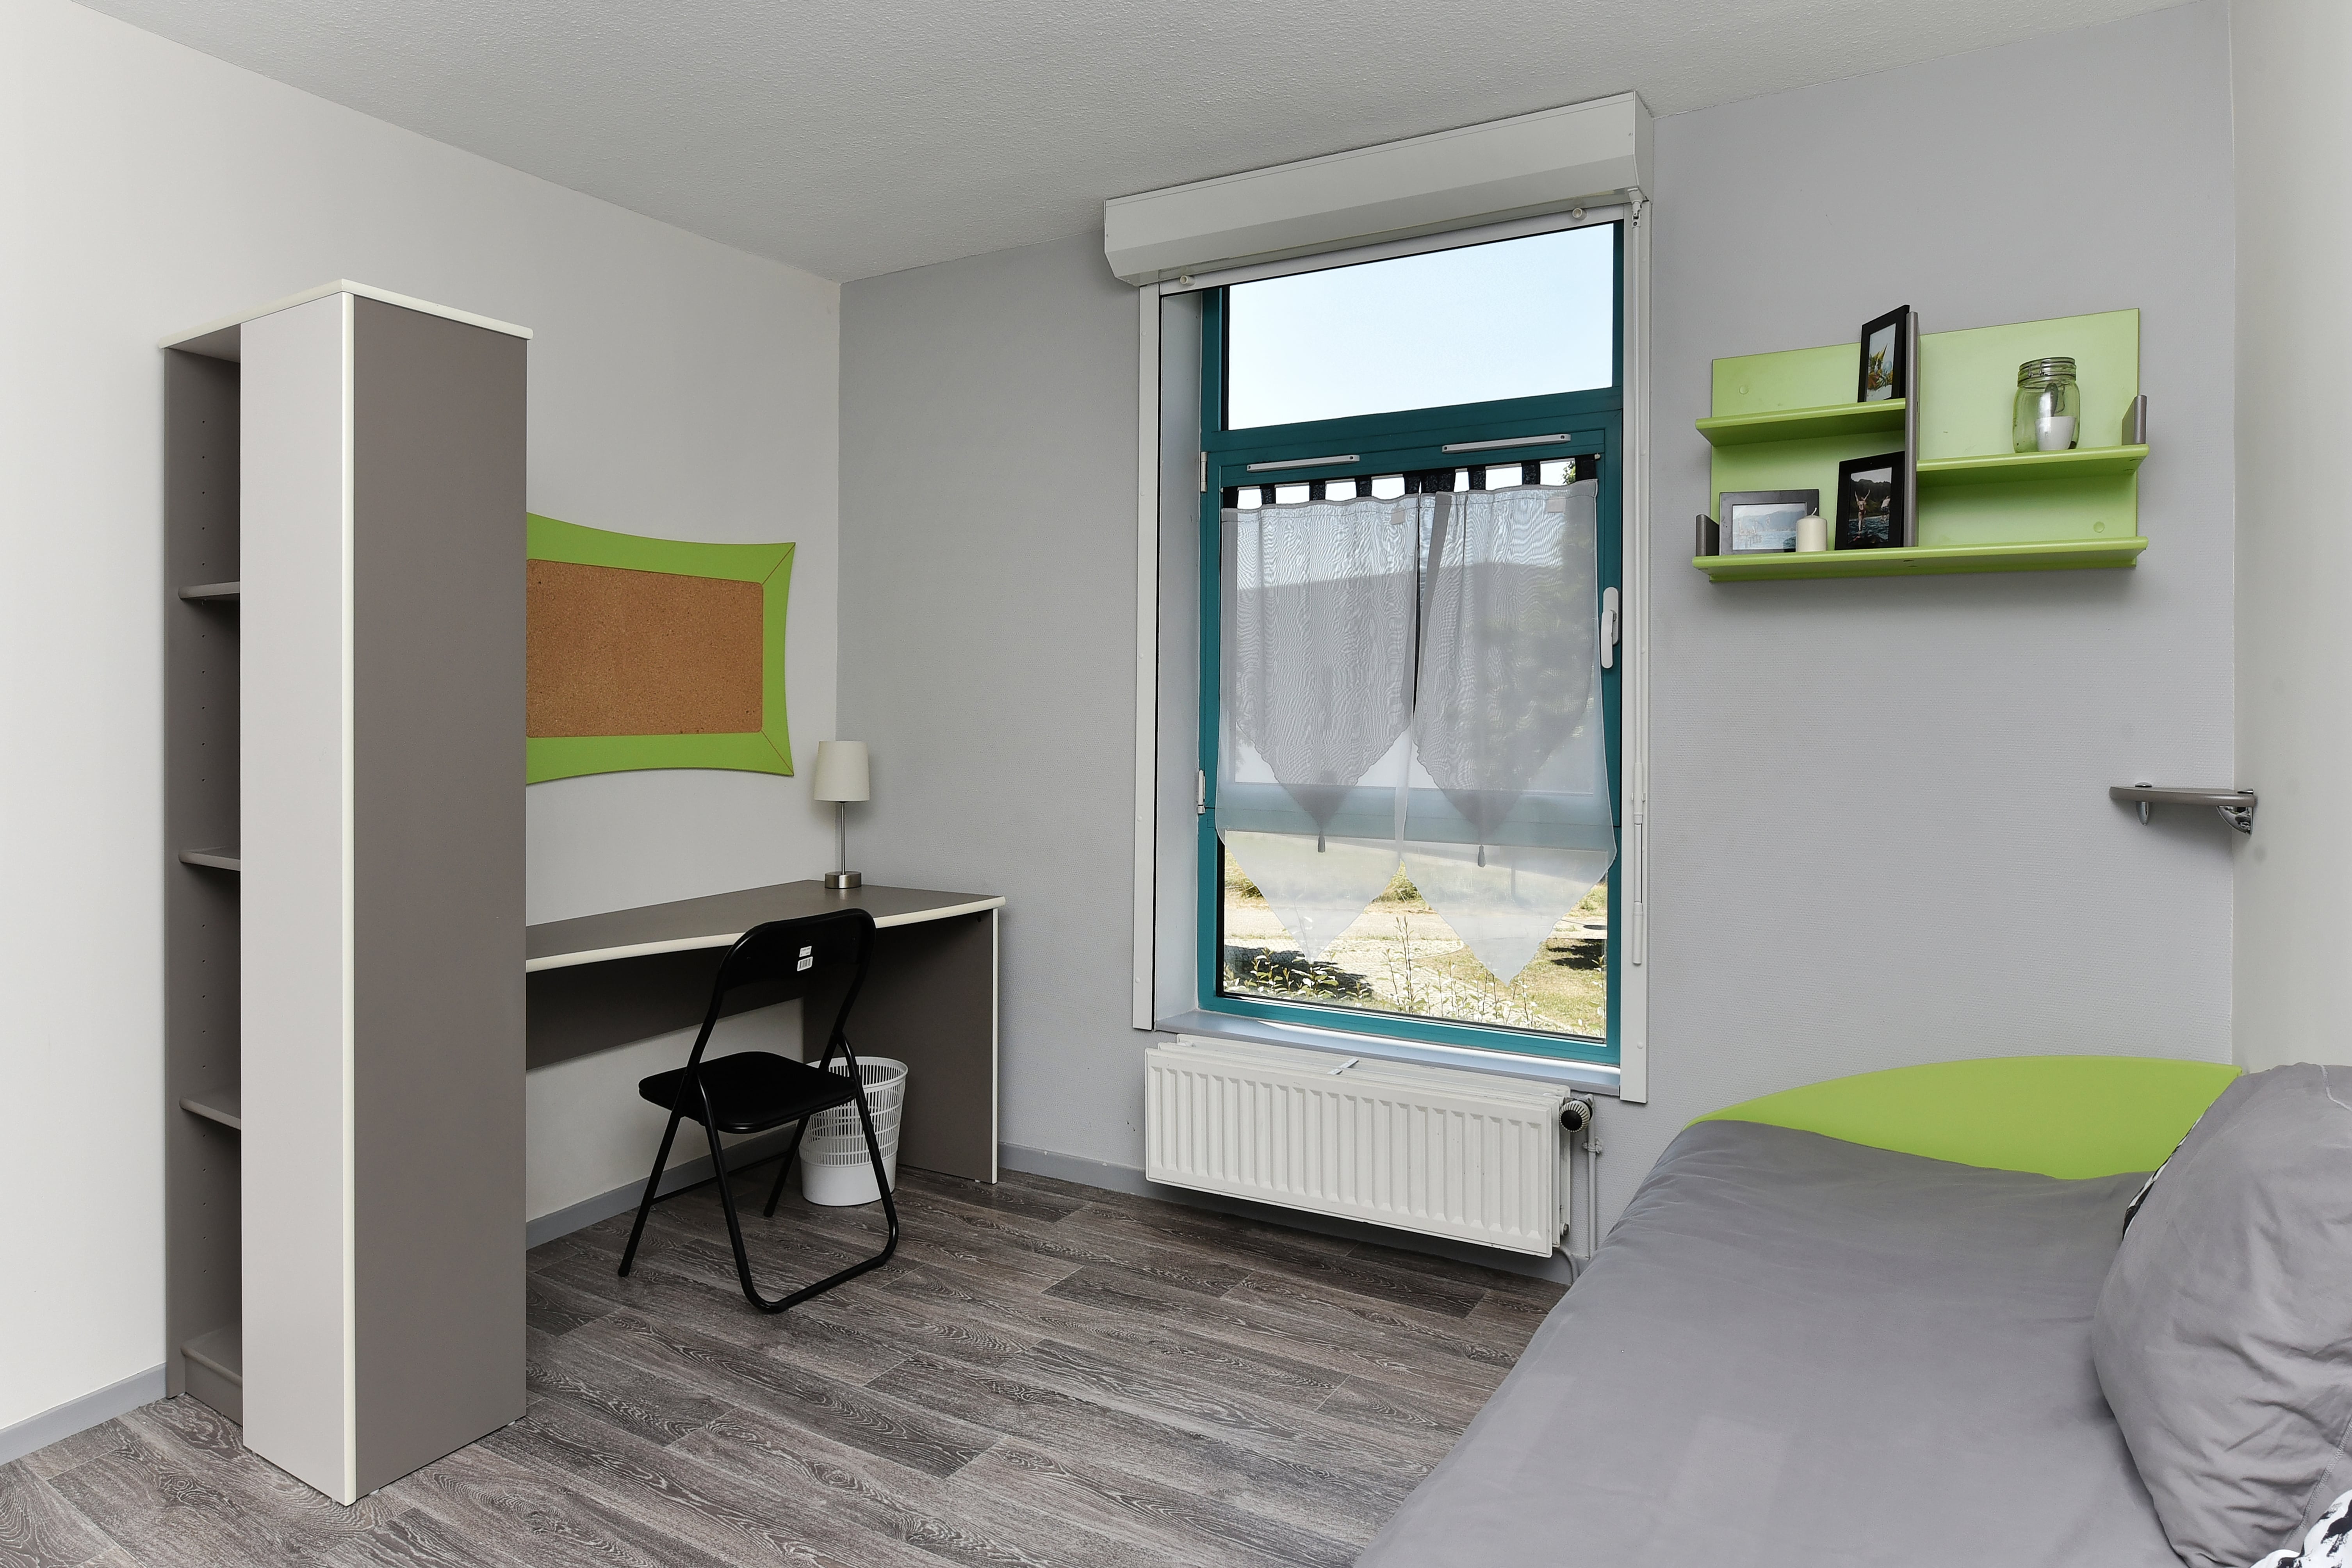 Une chambre étudiant meublée et moderne : un lit 1 place, un bureau, des étagères et une fenêtre donnant sur le parc.